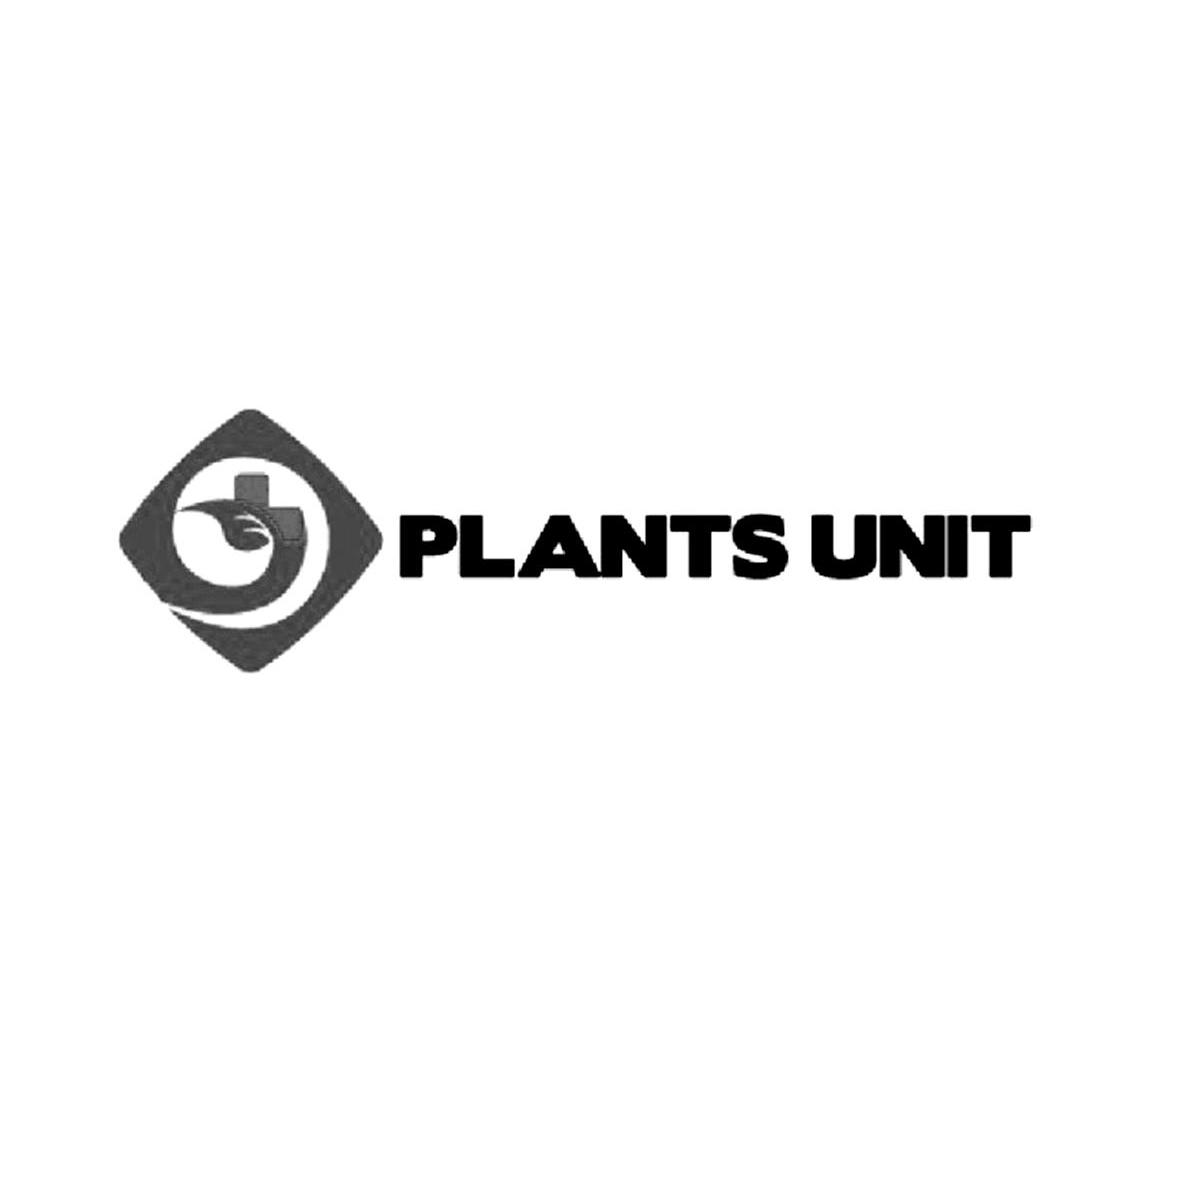 PLANTS UNIT